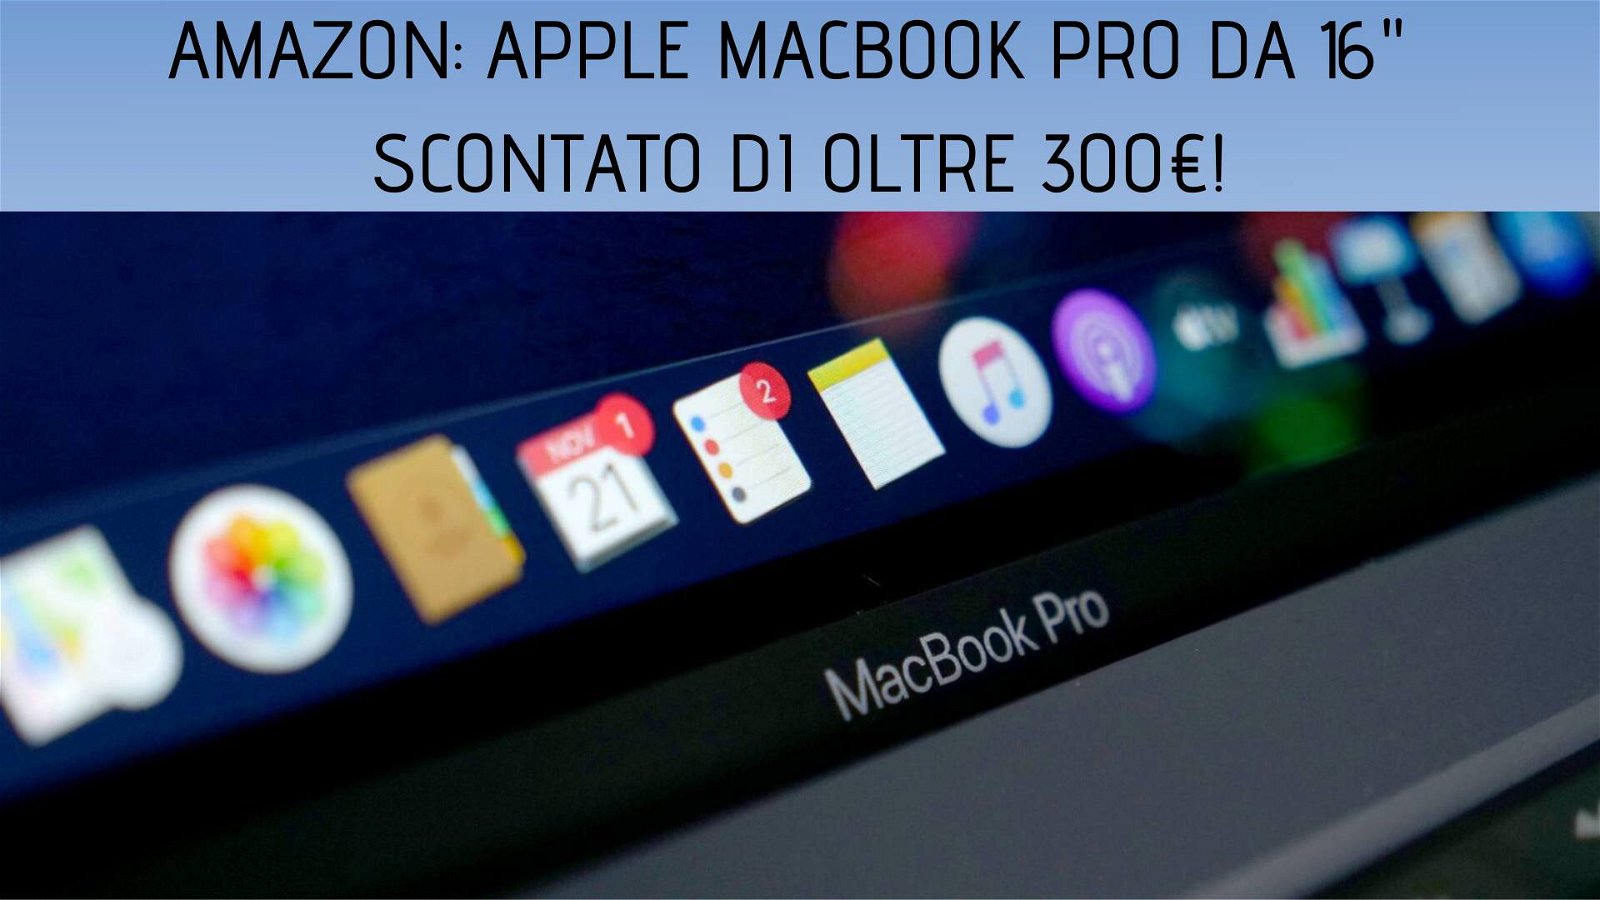 Immagine di Offerte del giorno Amazon: MacBook Pro da 16" scontato di oltre 300€!